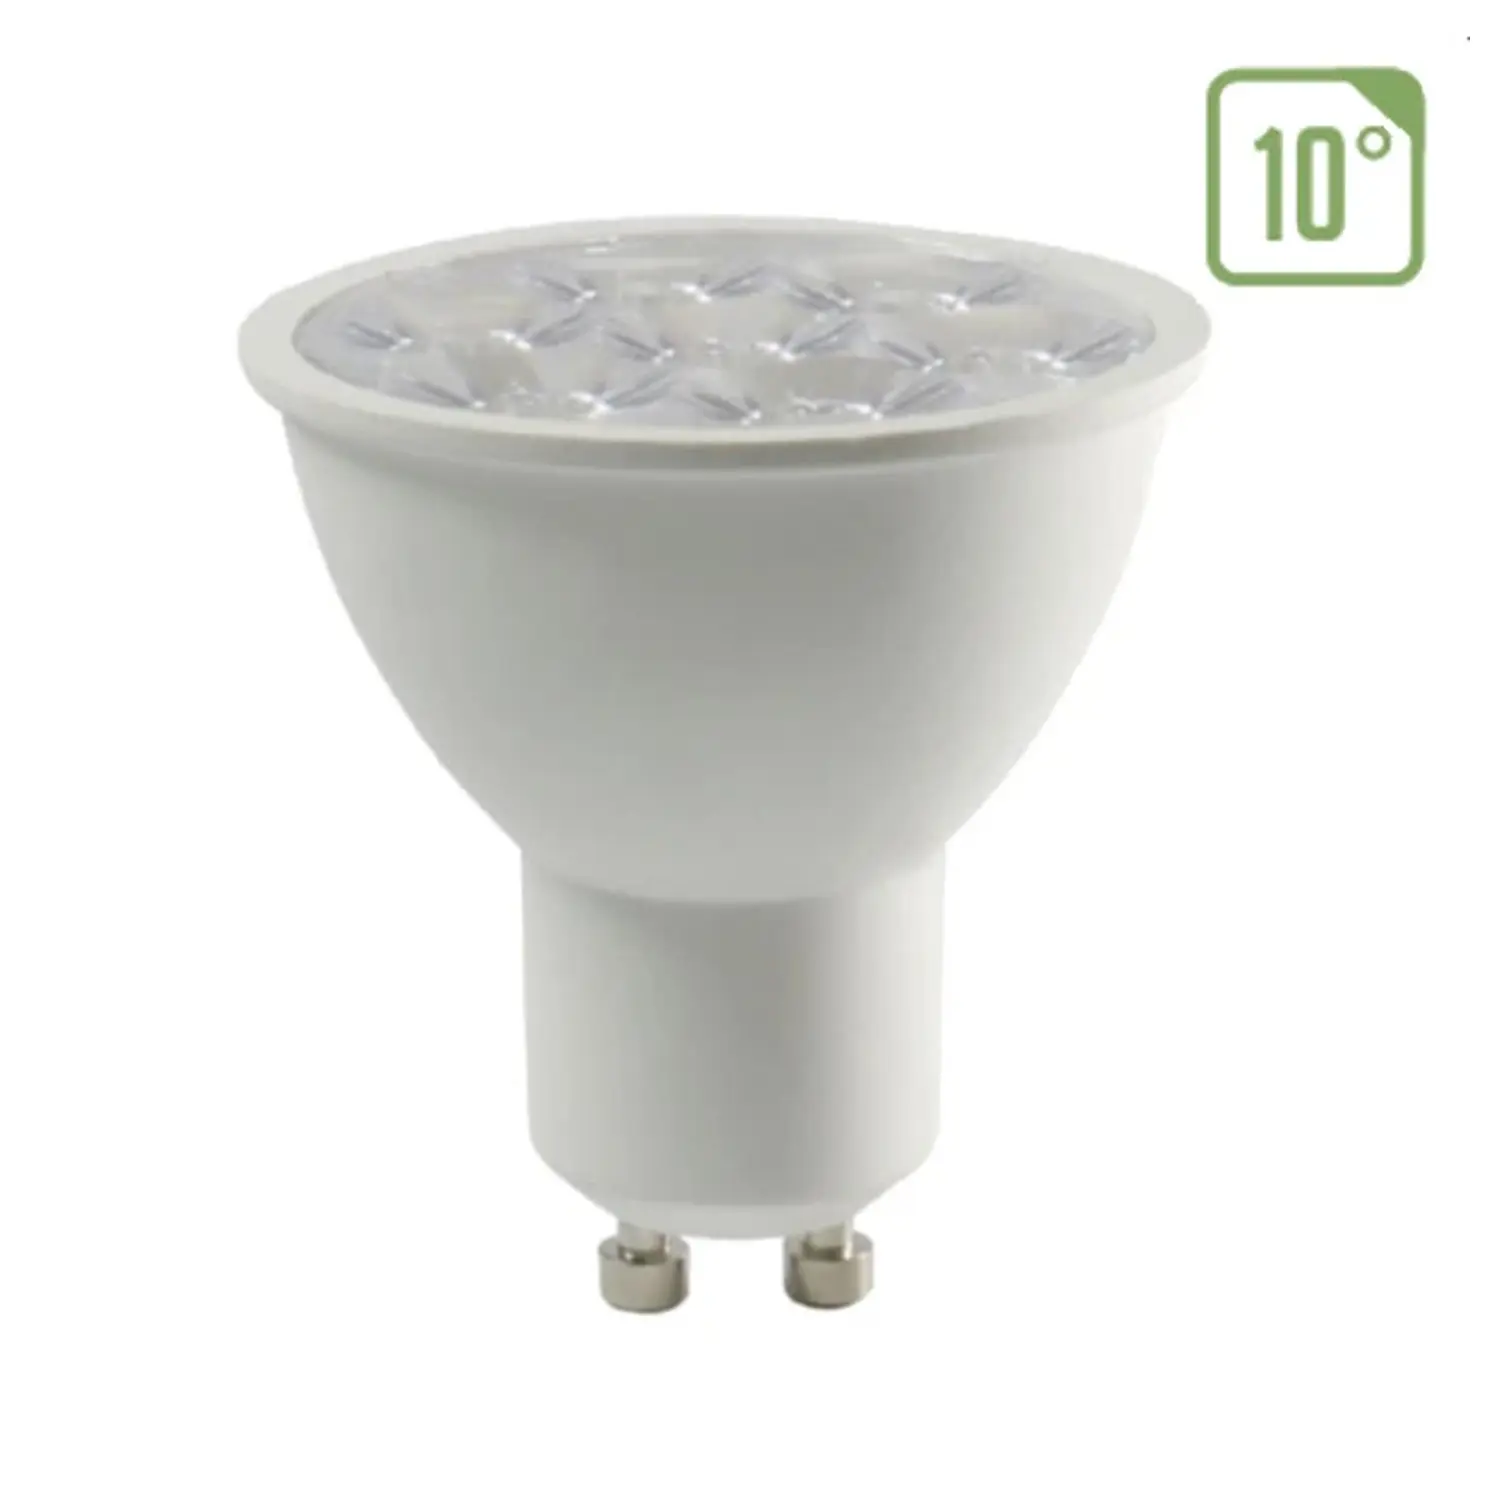 immagine del prodotto lampadina led chip samsung lampada faretto 10° angolo stretto gu10 6 watt bianco caldo